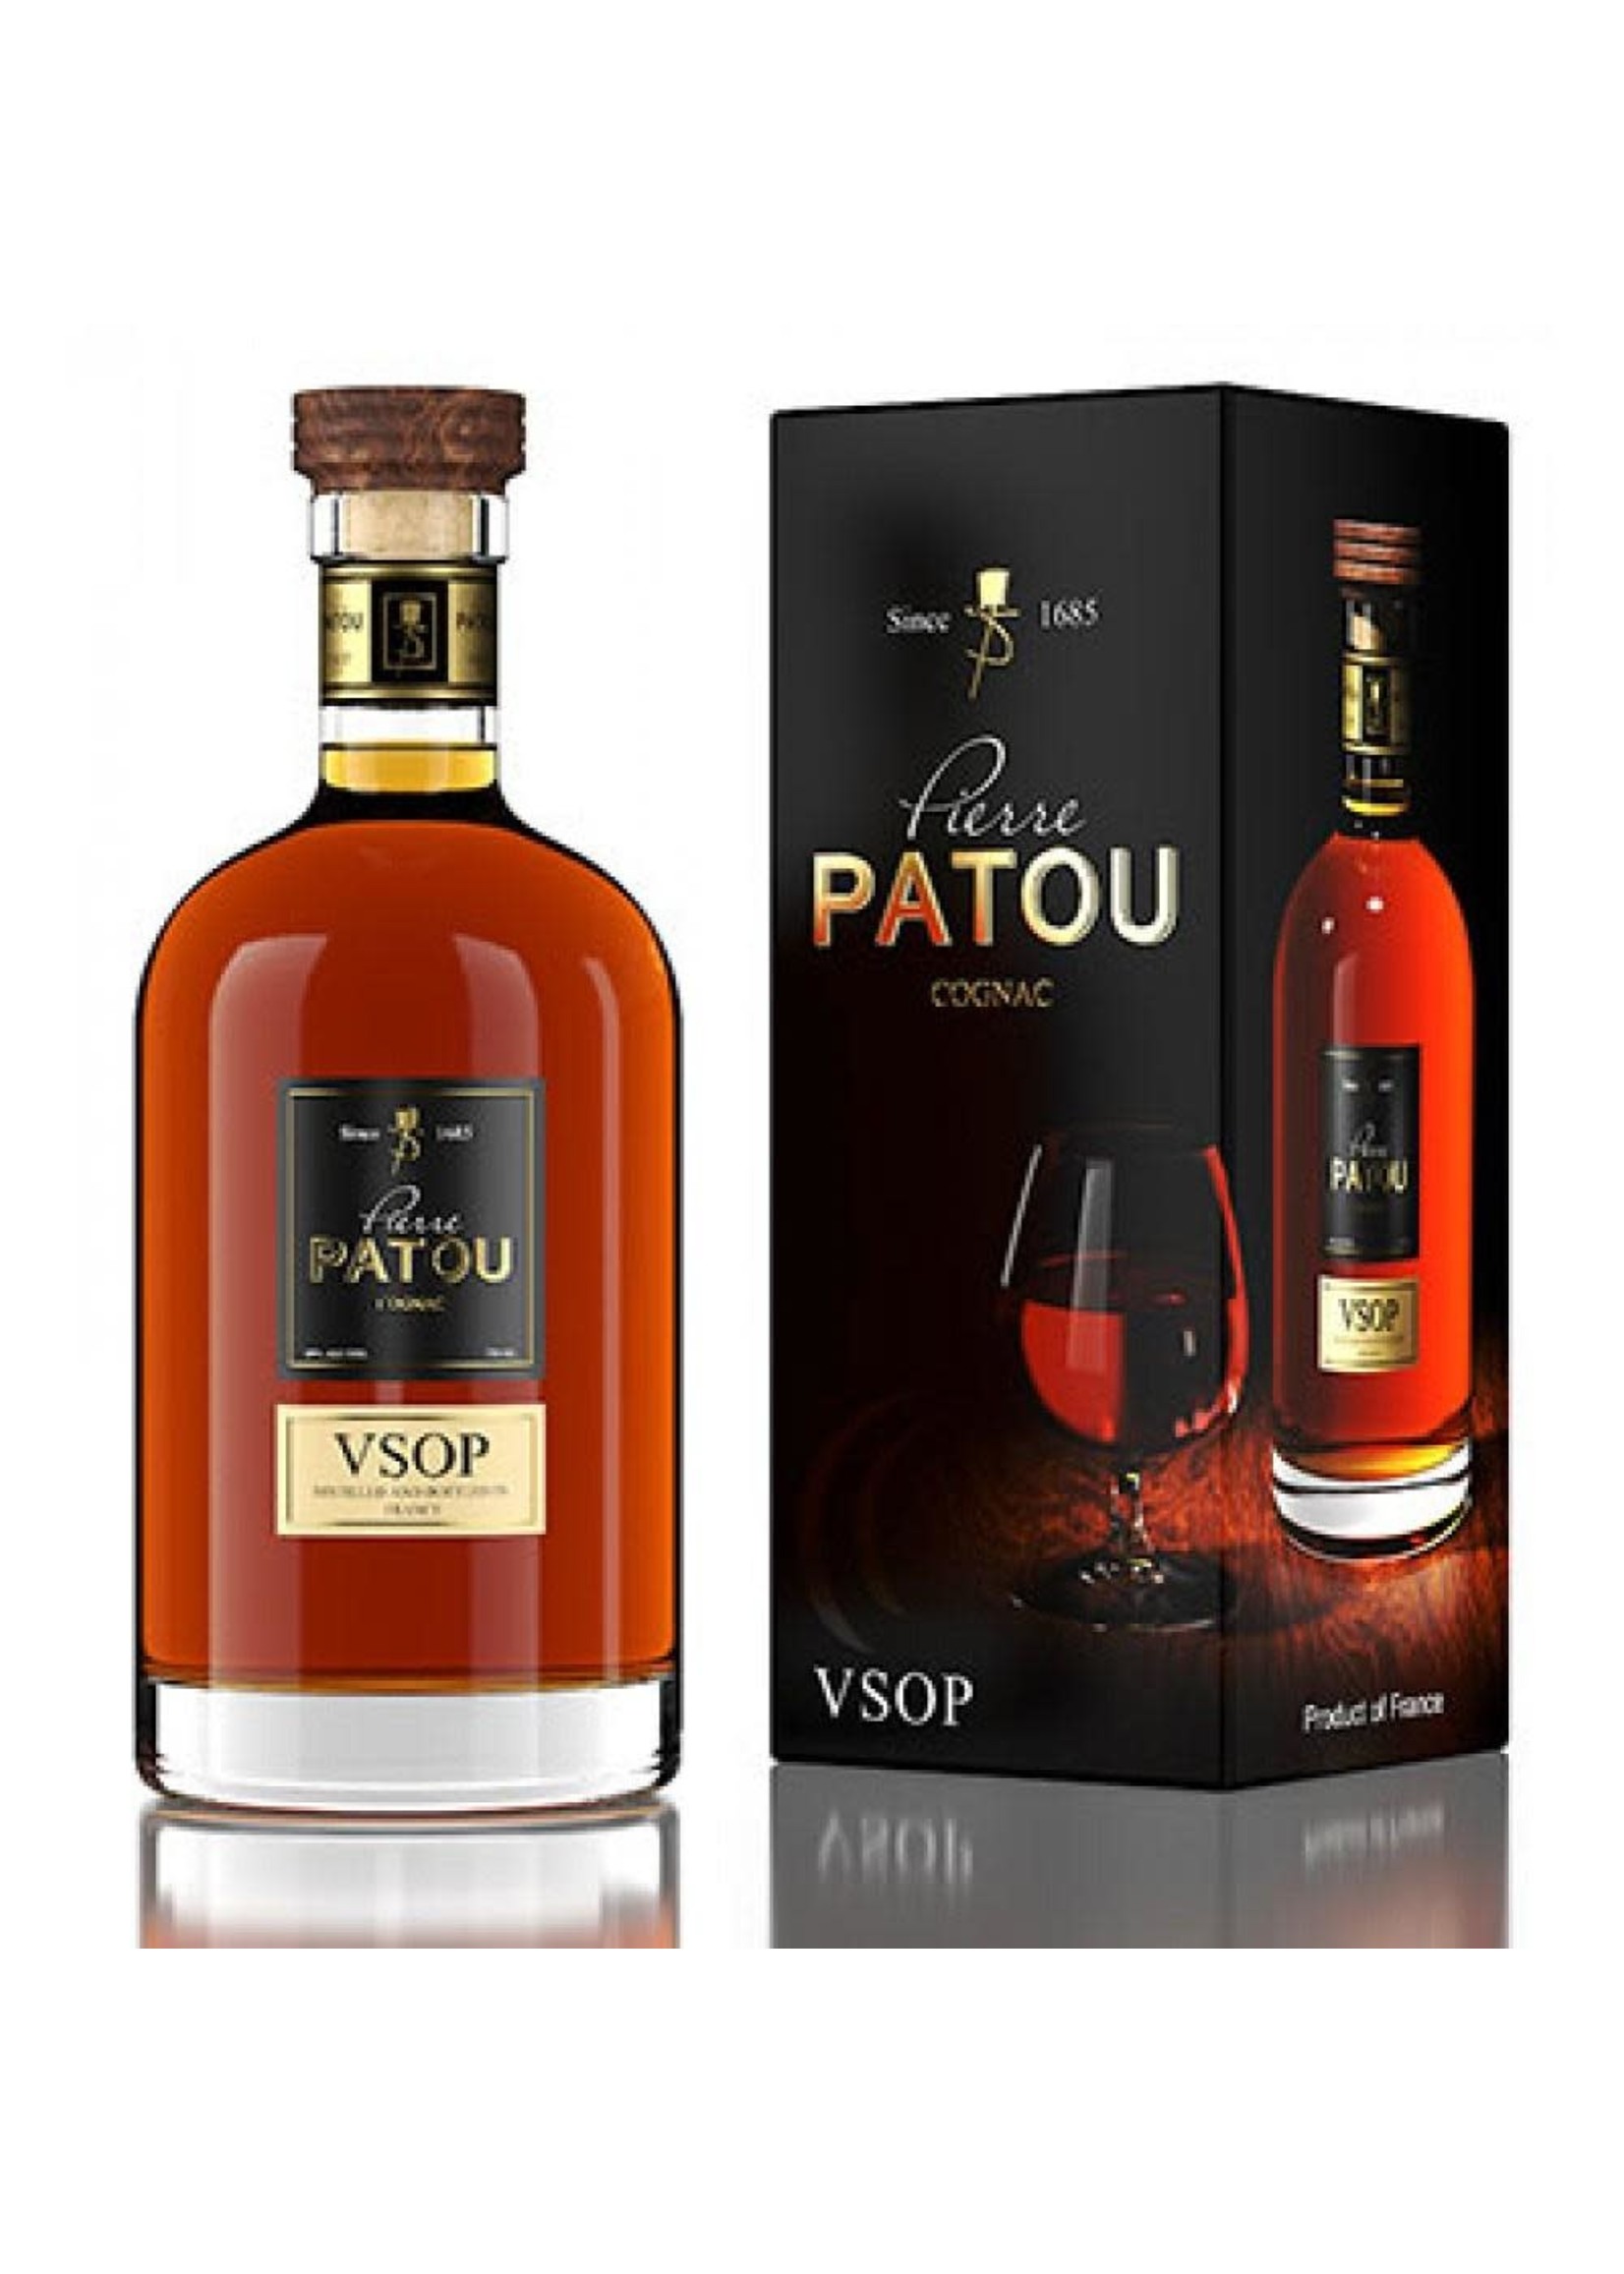 Pierre Patou Pierre Patou Cognac / VSOP